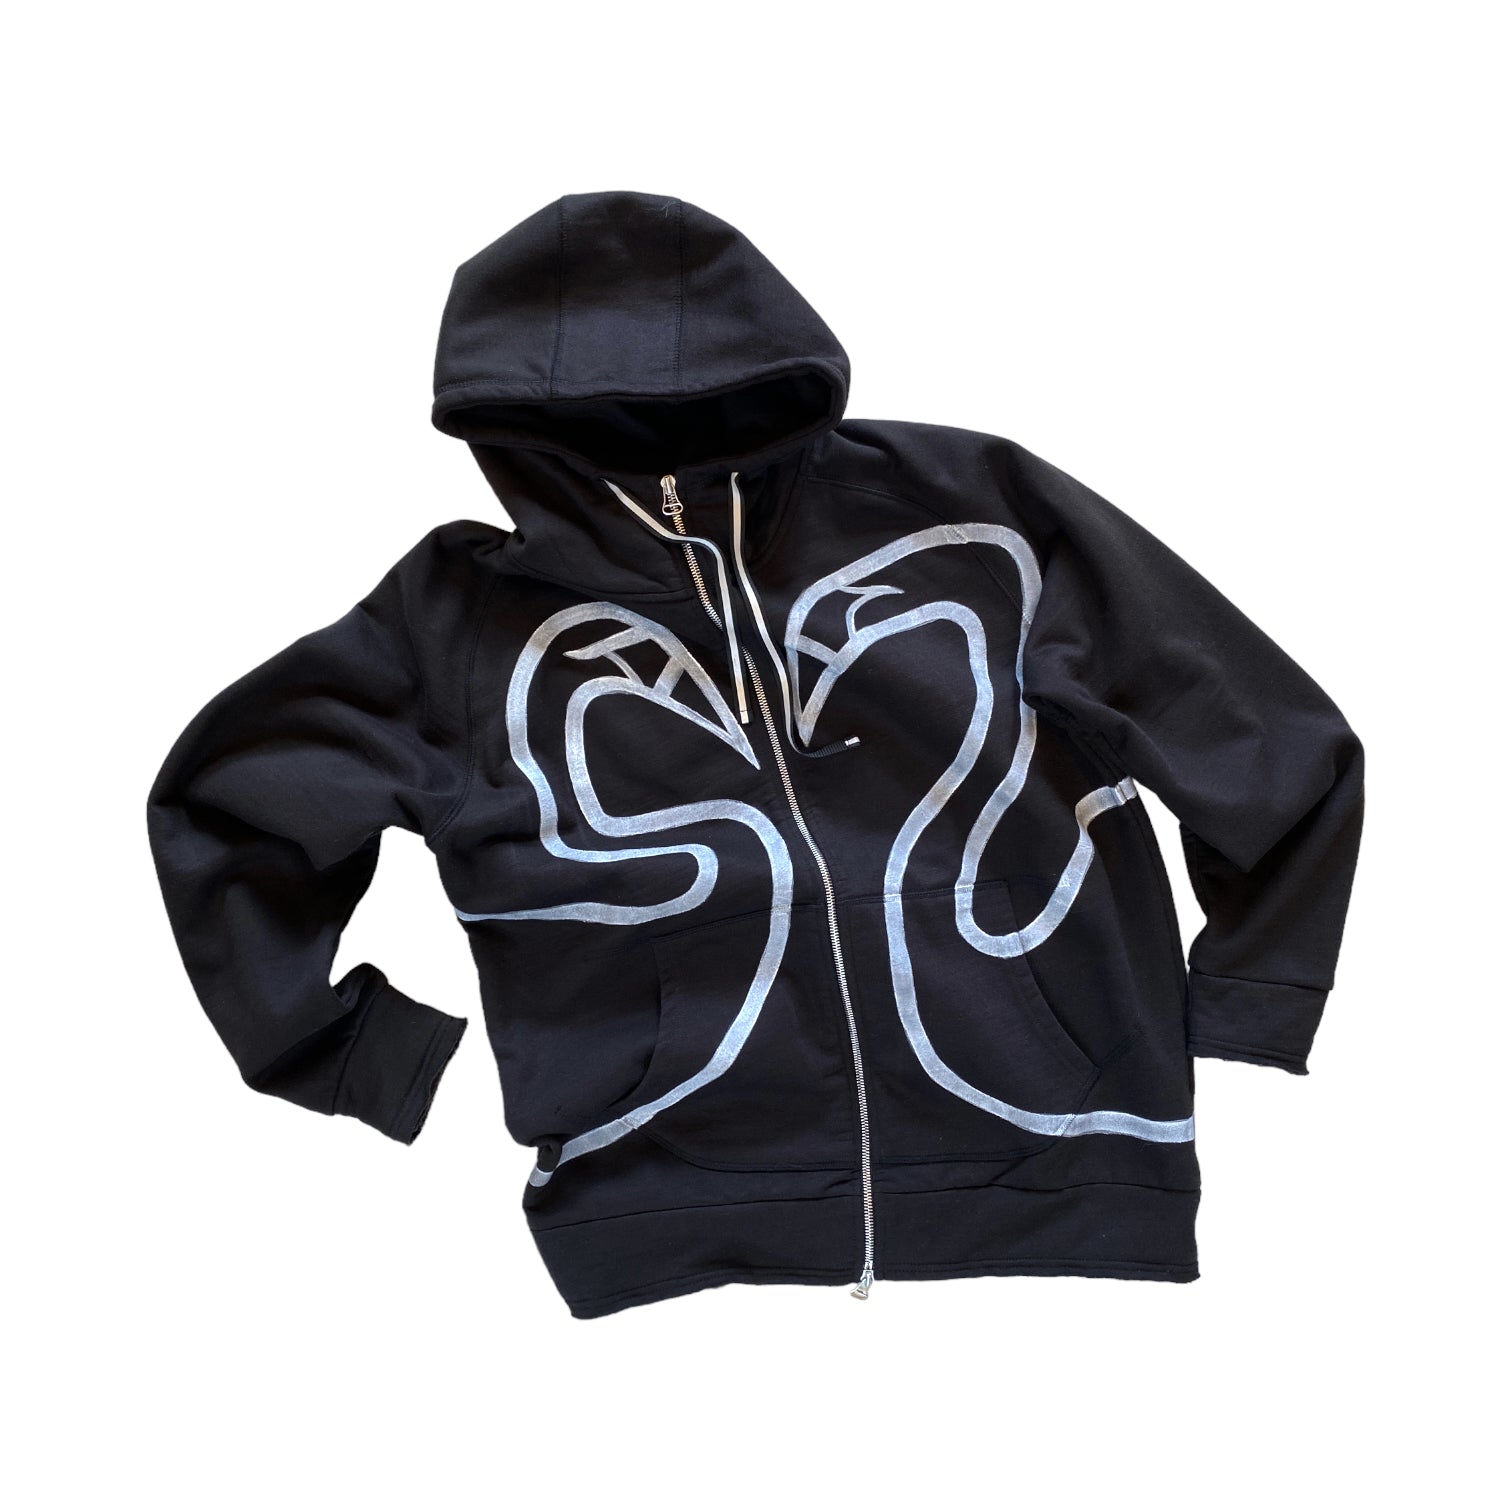 SWANS zip-up hoodie